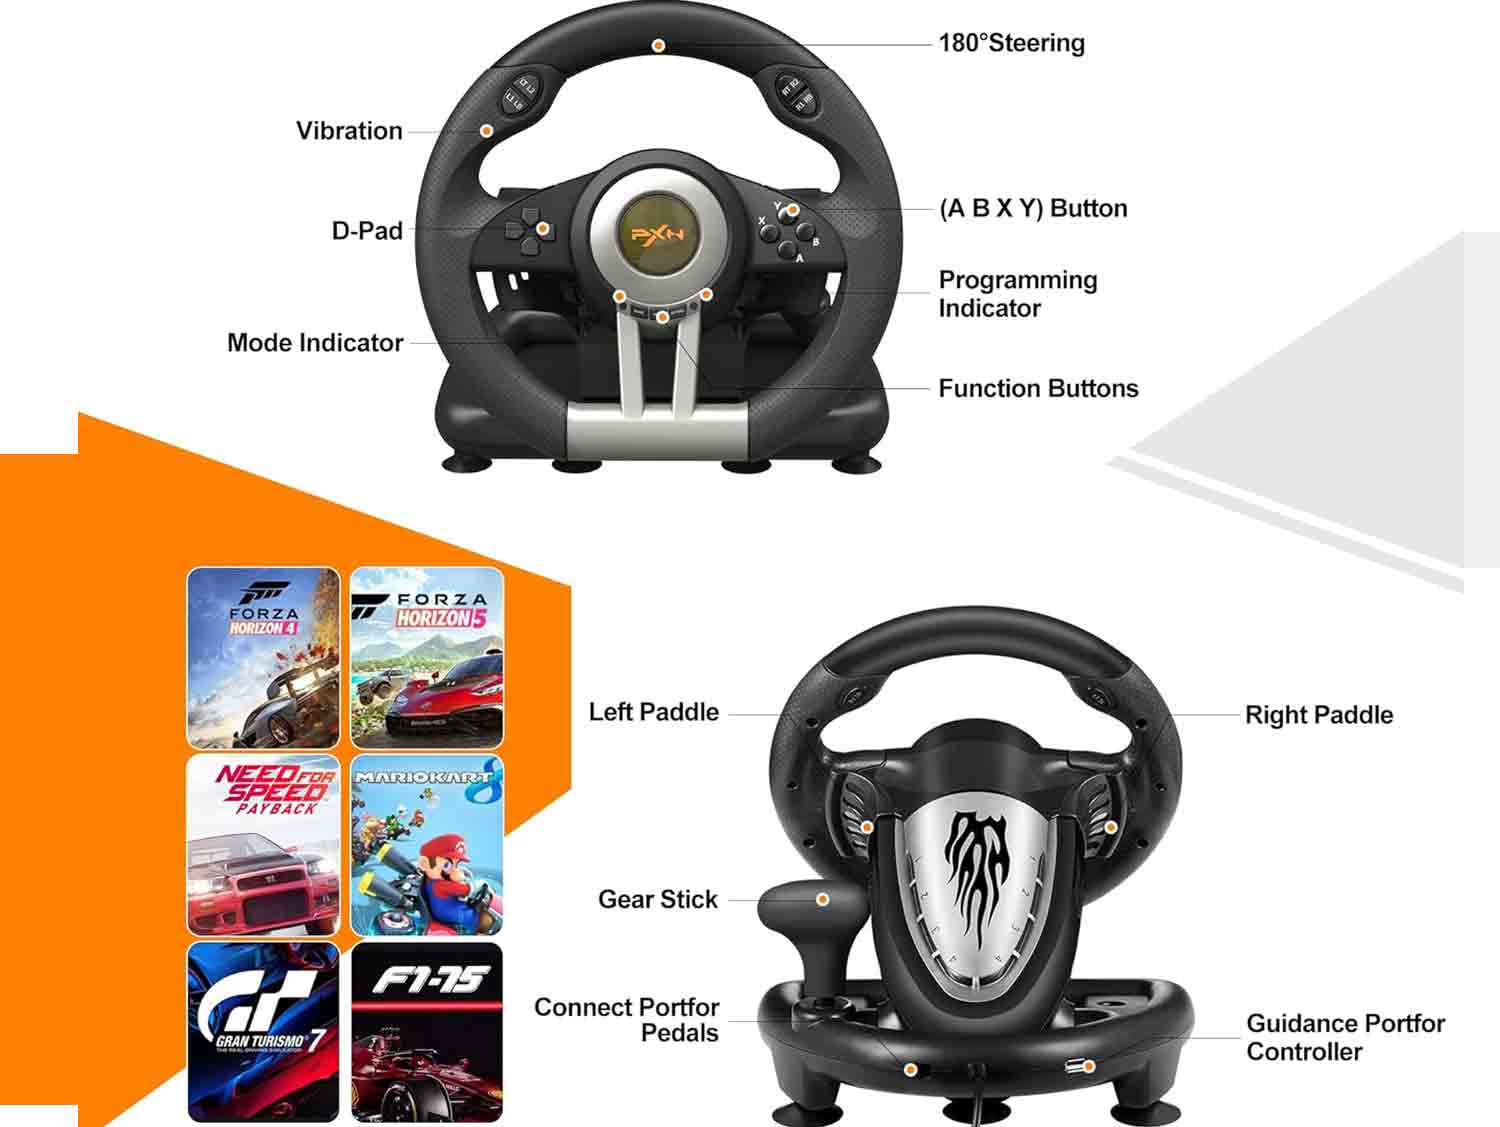 PXN Racing Wheel - Gaming Steering Wheel